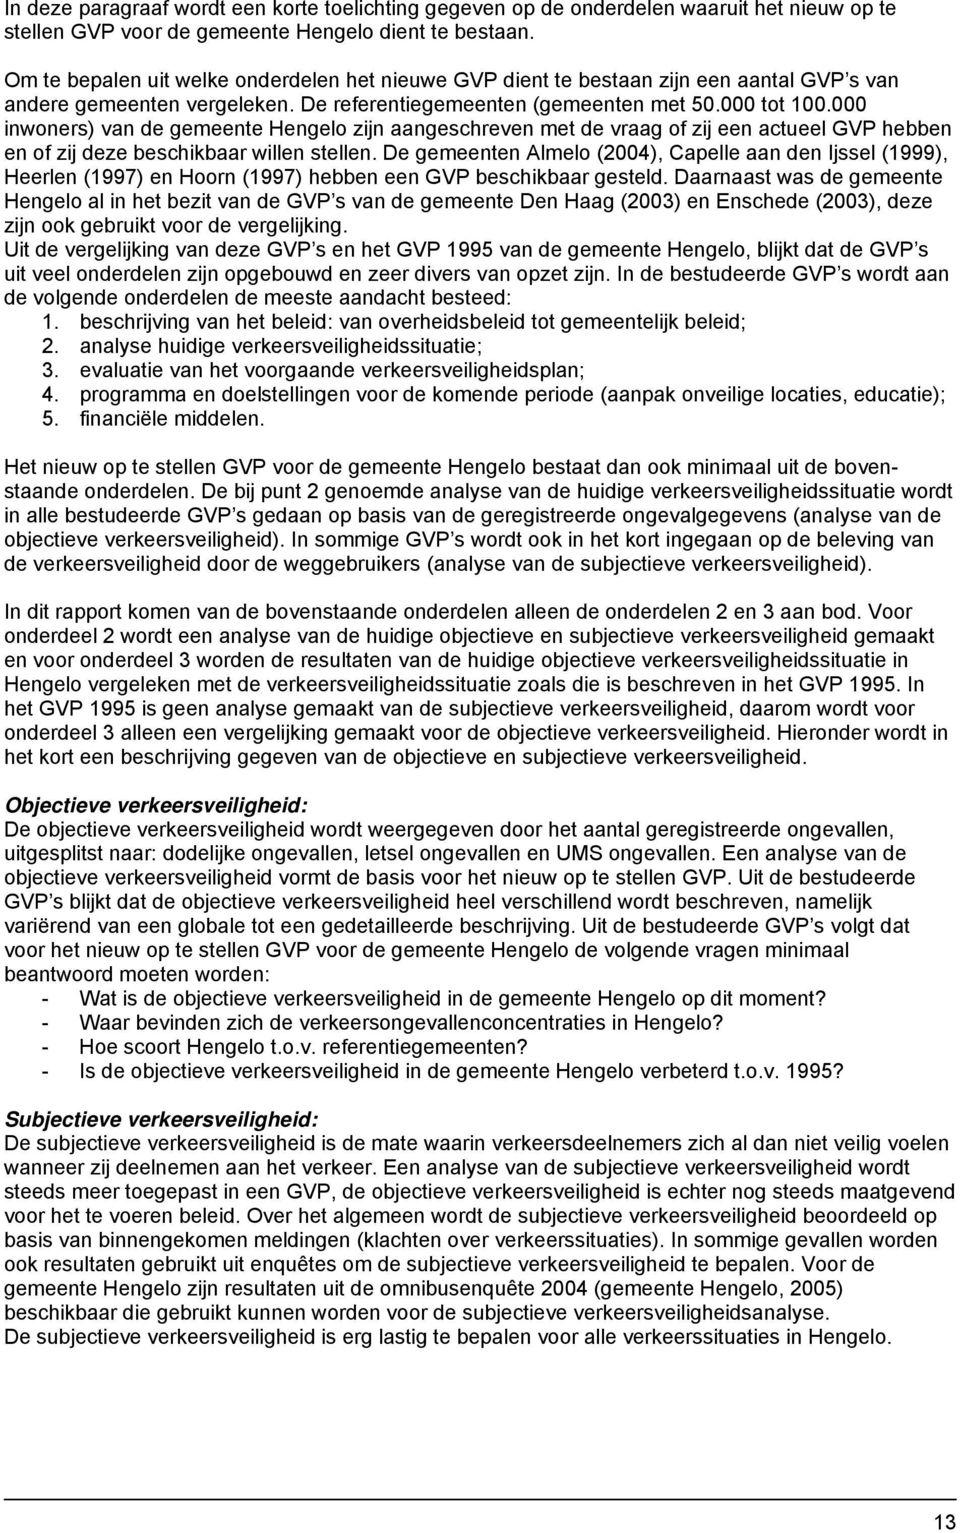 000 inwoners) van de gemeente Hengelo zijn aangeschreven met de vraag of zij een actueel GVP hebben en of zij deze beschikbaar willen stellen.